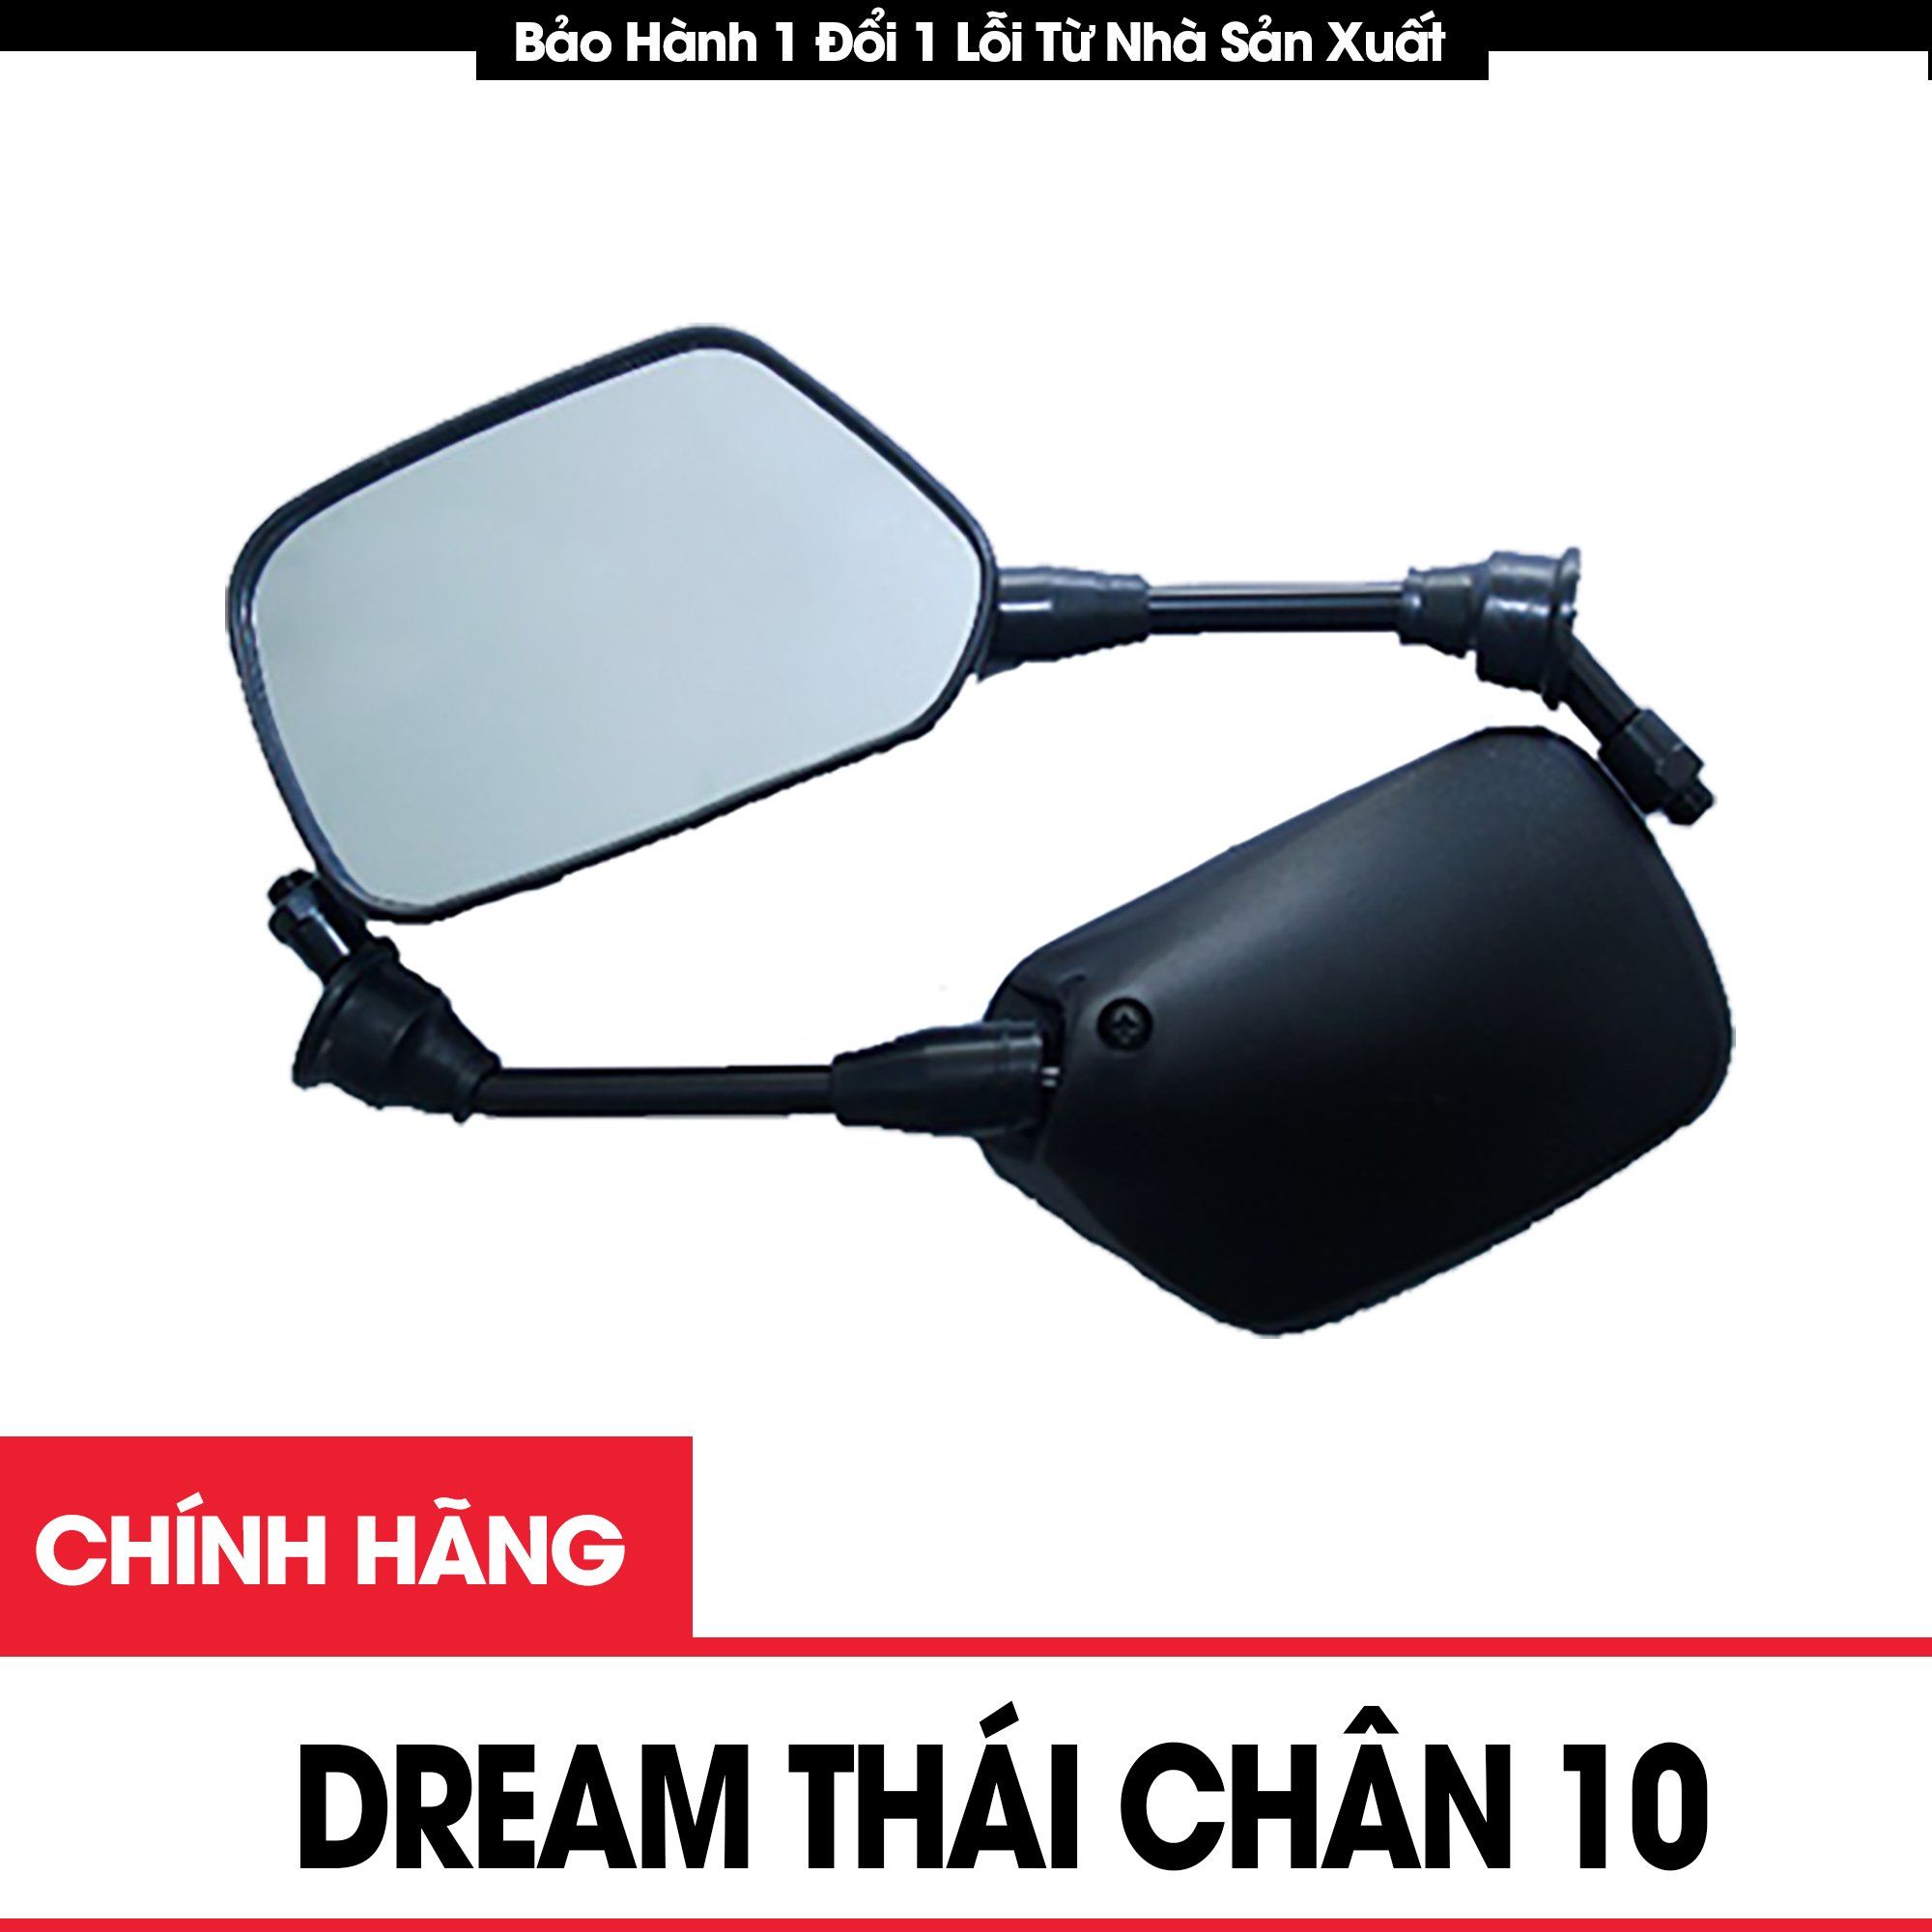 Gương xe máy Dream Thái chân 10 chính hiệu Daichi - Phụ Tùng Xe Máy